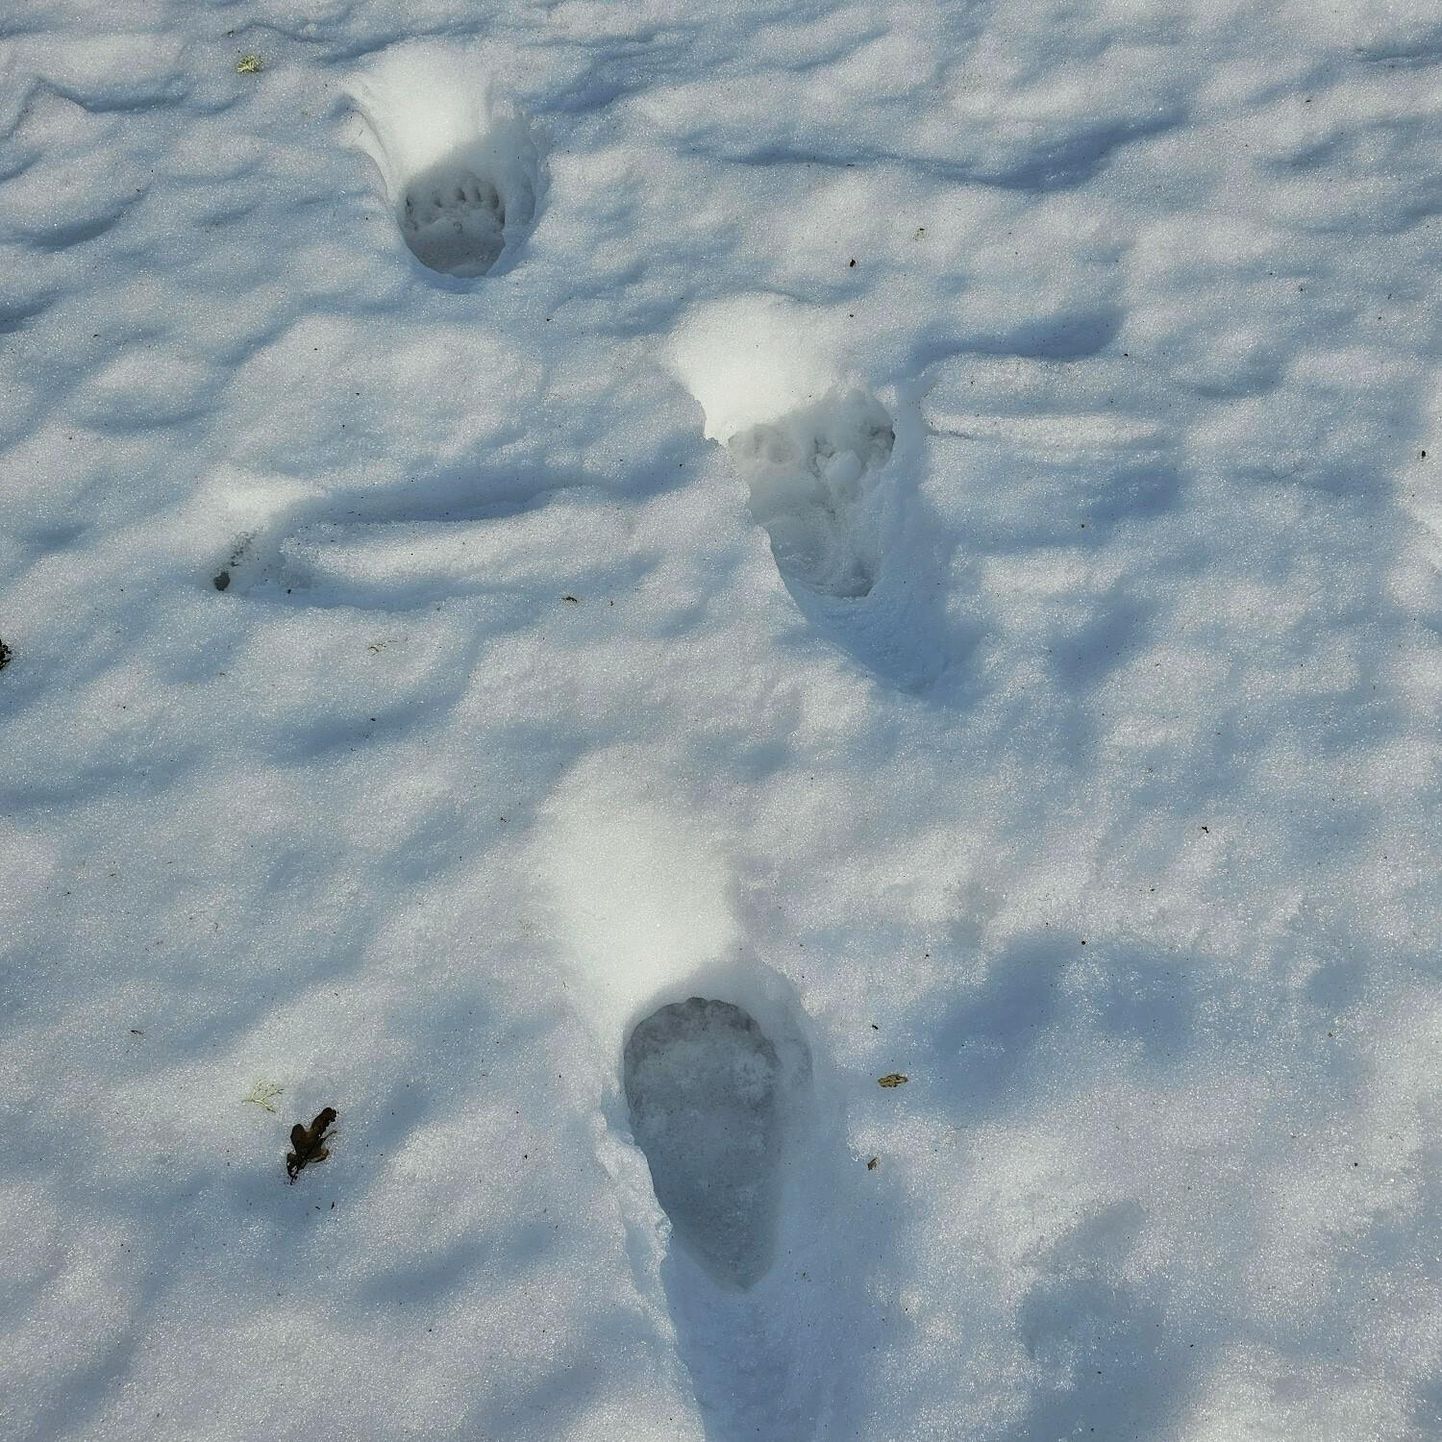 Vinni vallas võis lumel juba selle kevade esimesi karu jälgi silmata.